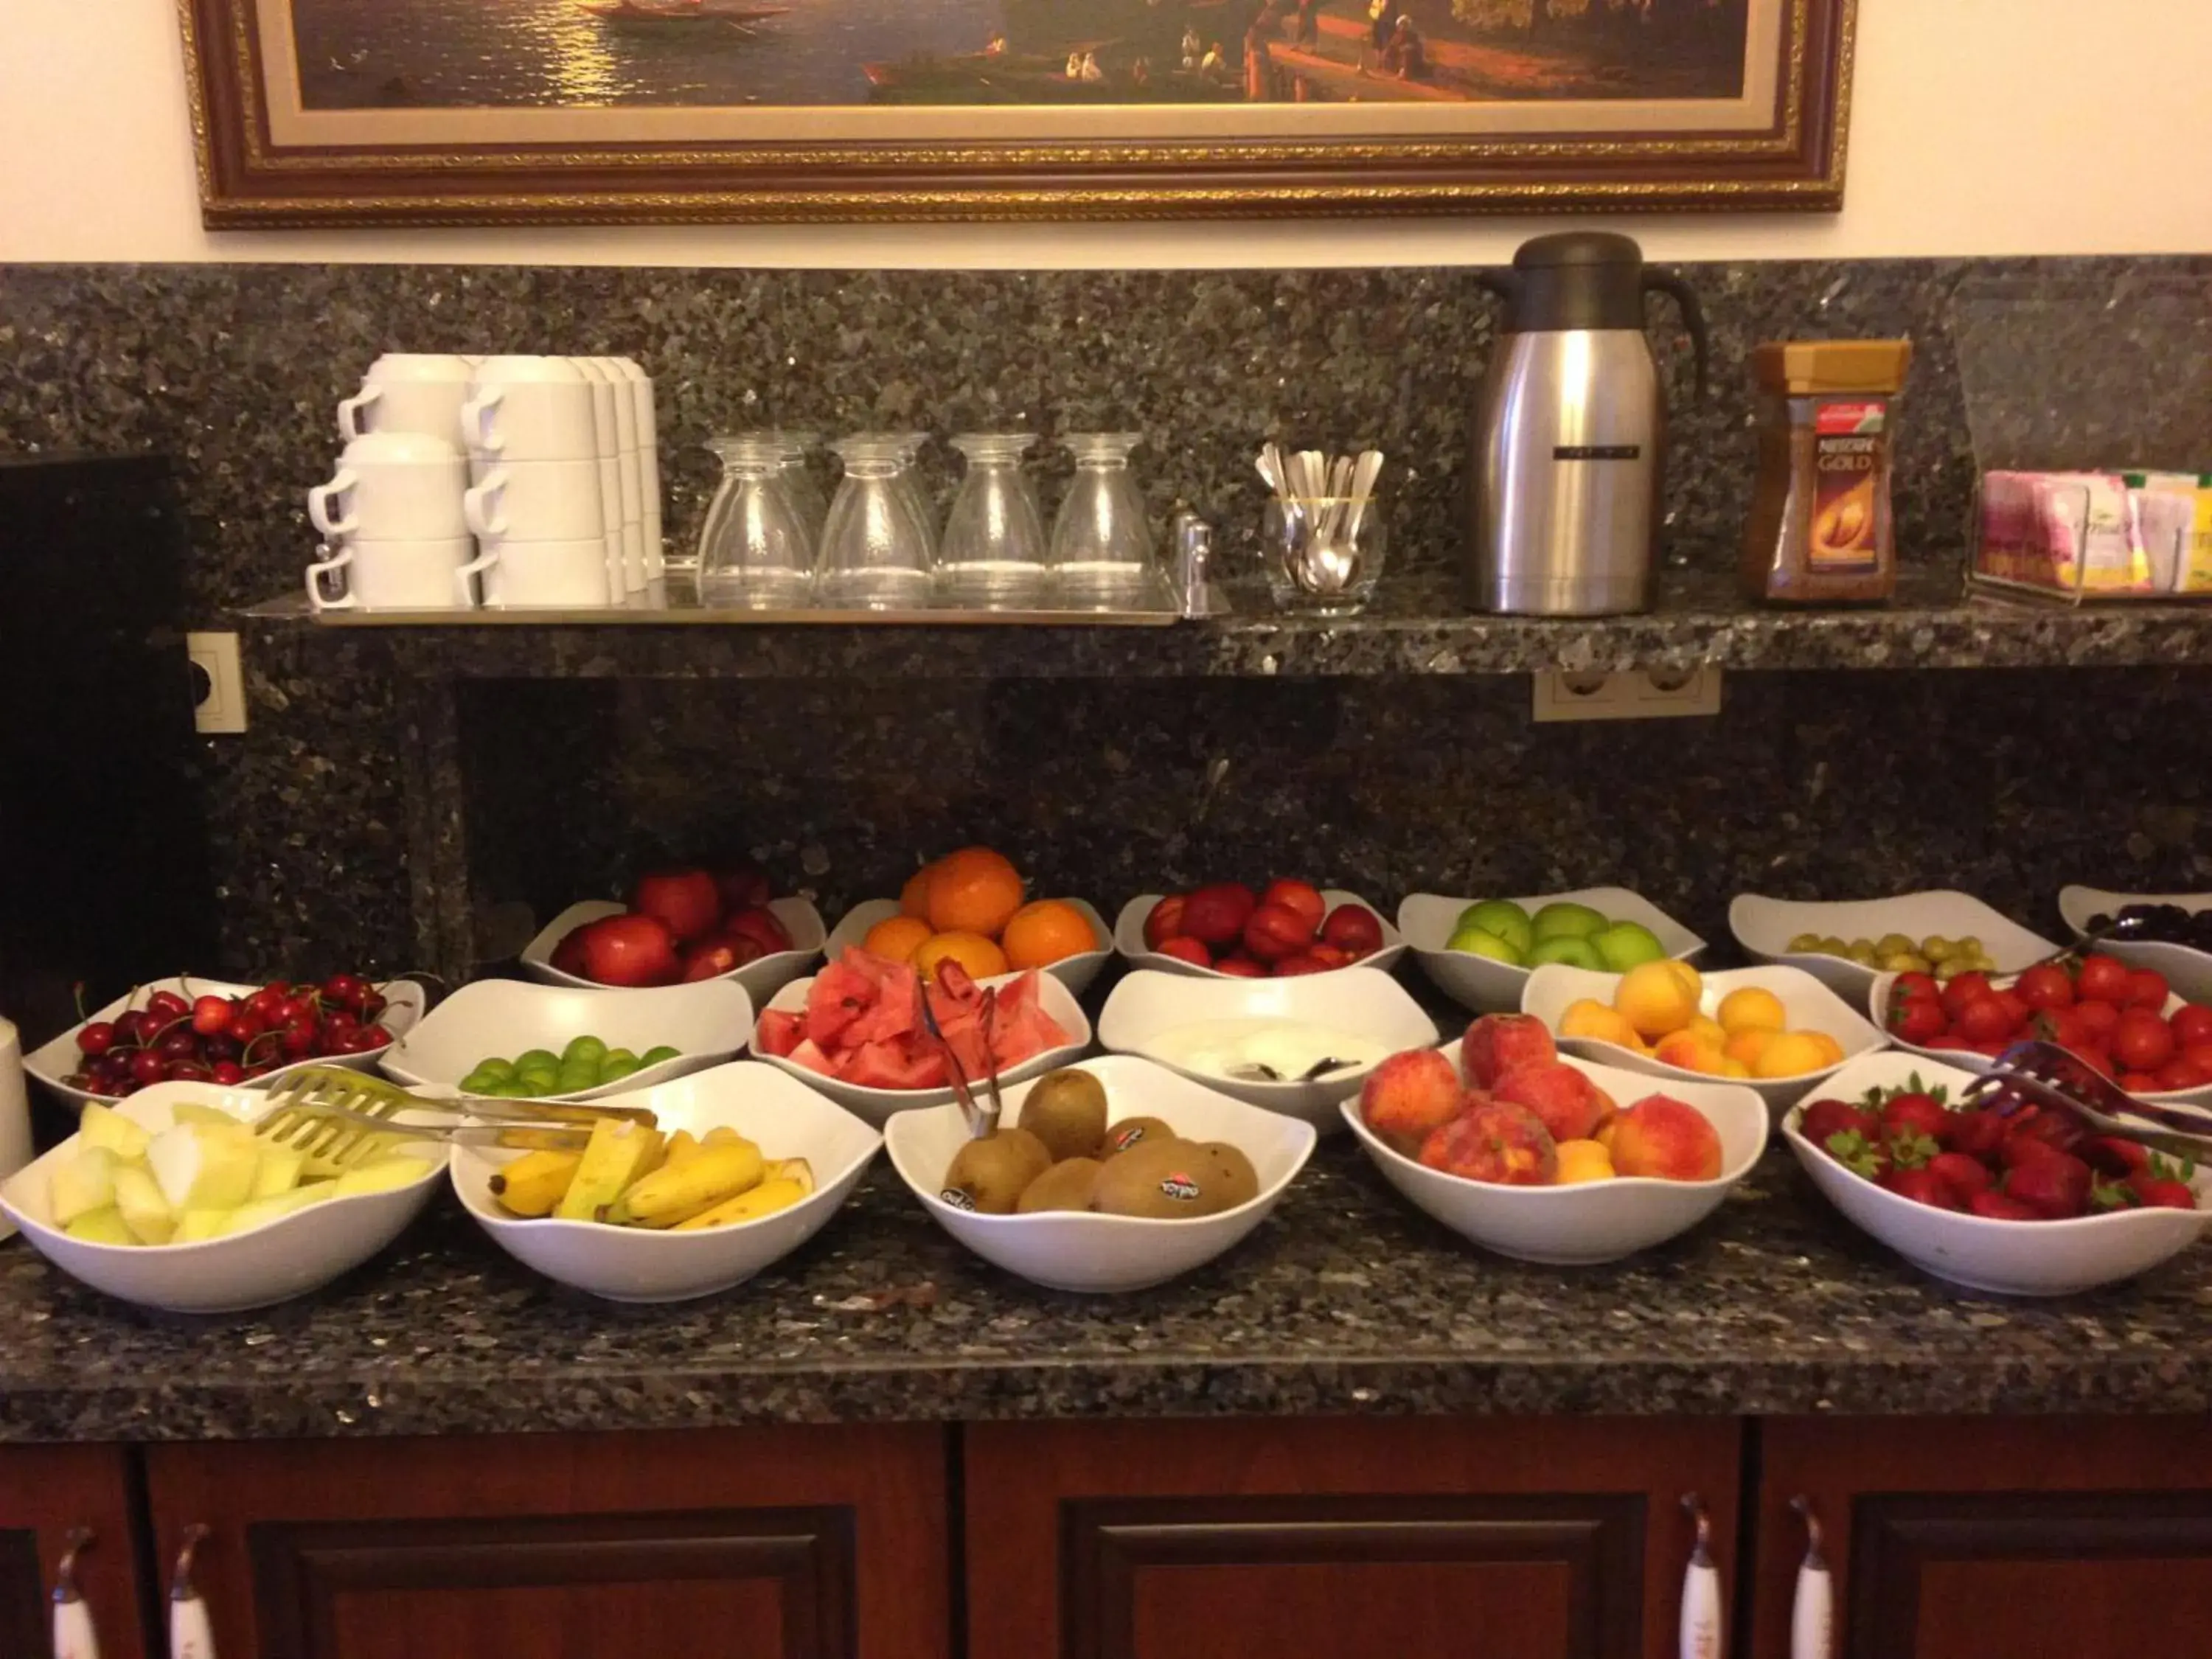 Buffet breakfast in Sultan Palace Hotel